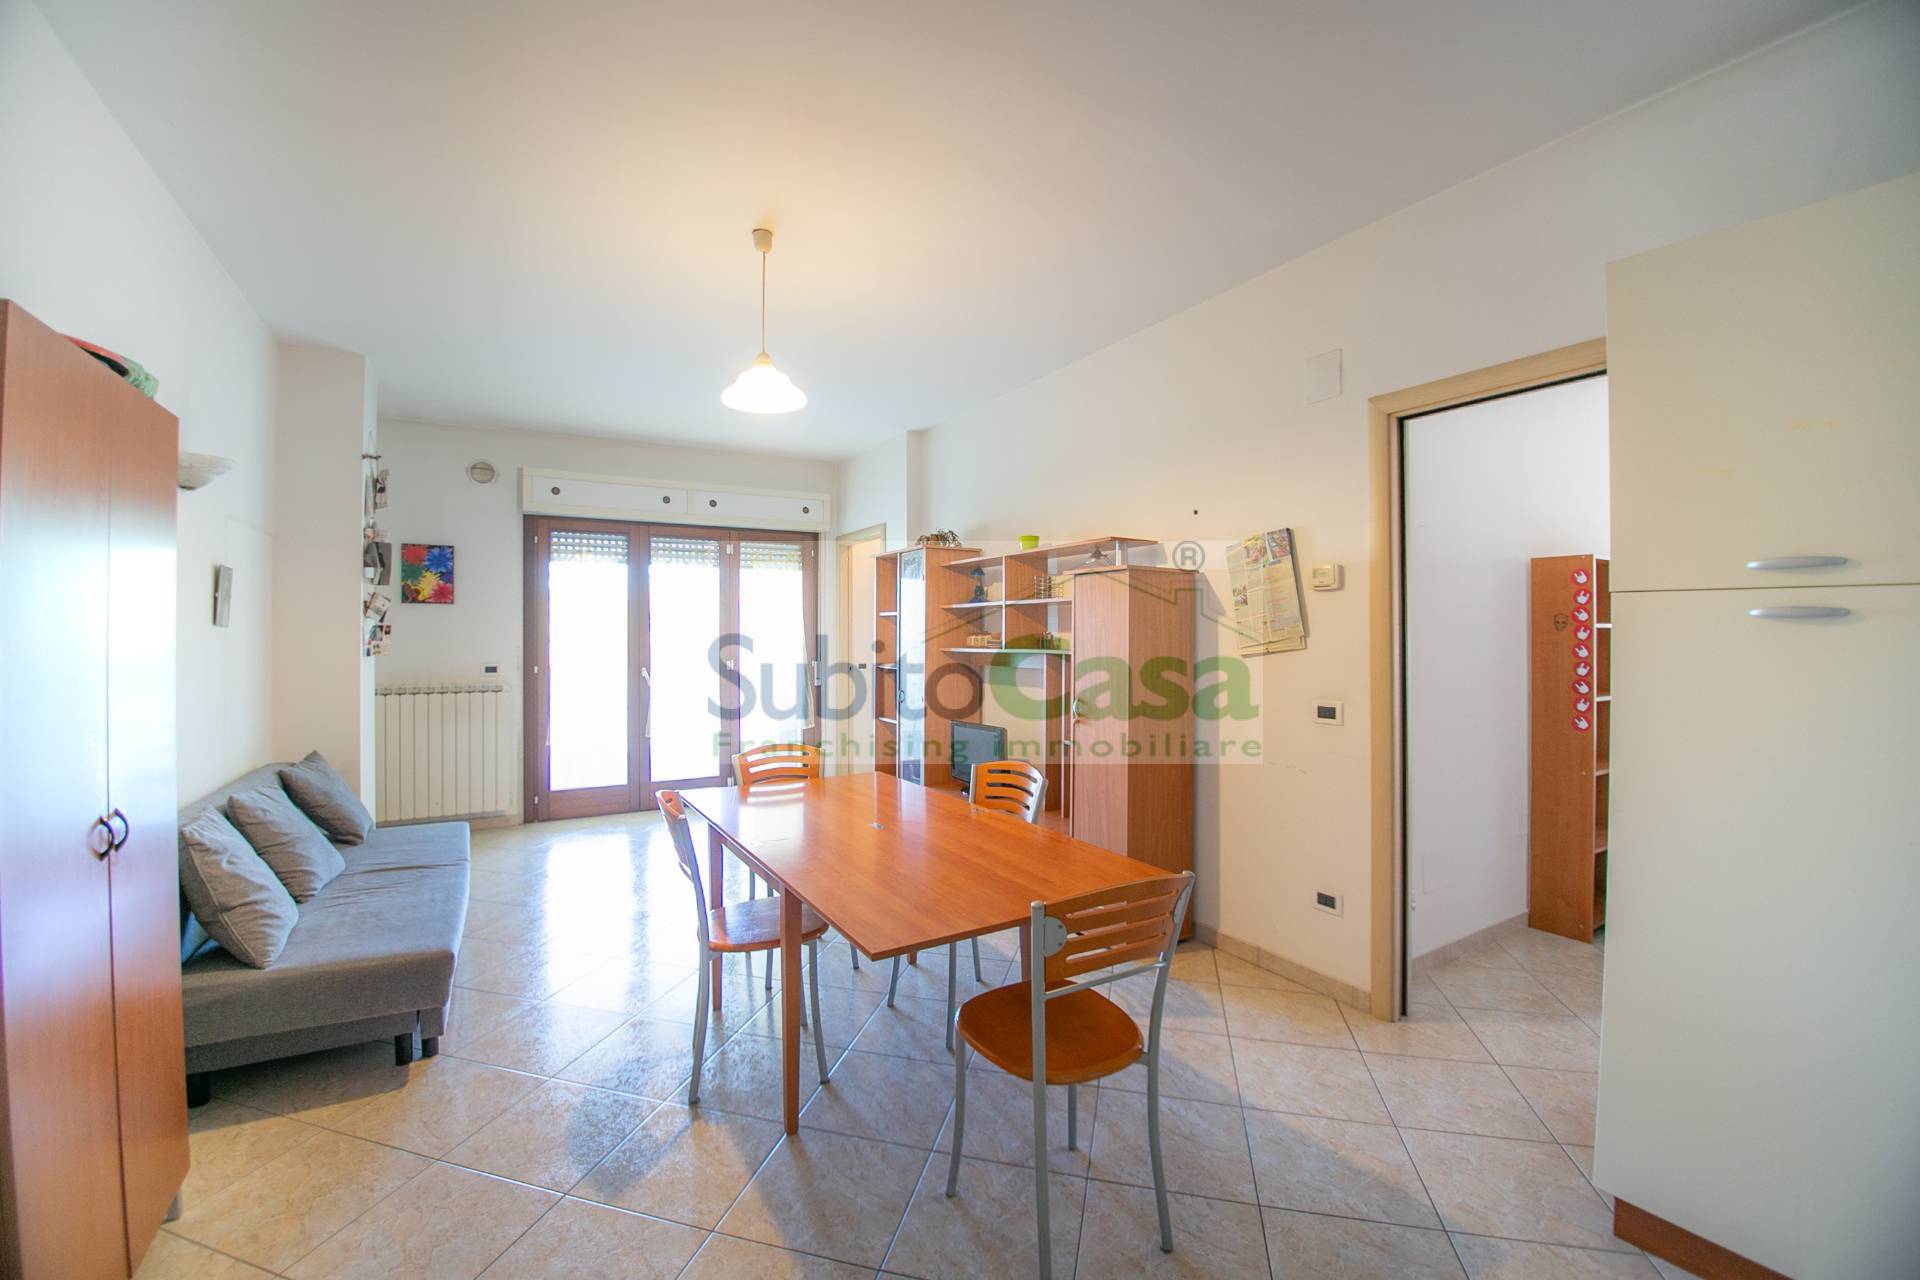 Appartamento in vendita a Chieti, 4 locali, zona Località: ChietiScaloZonaStazione, prezzo € 148.000 | PortaleAgenzieImmobiliari.it